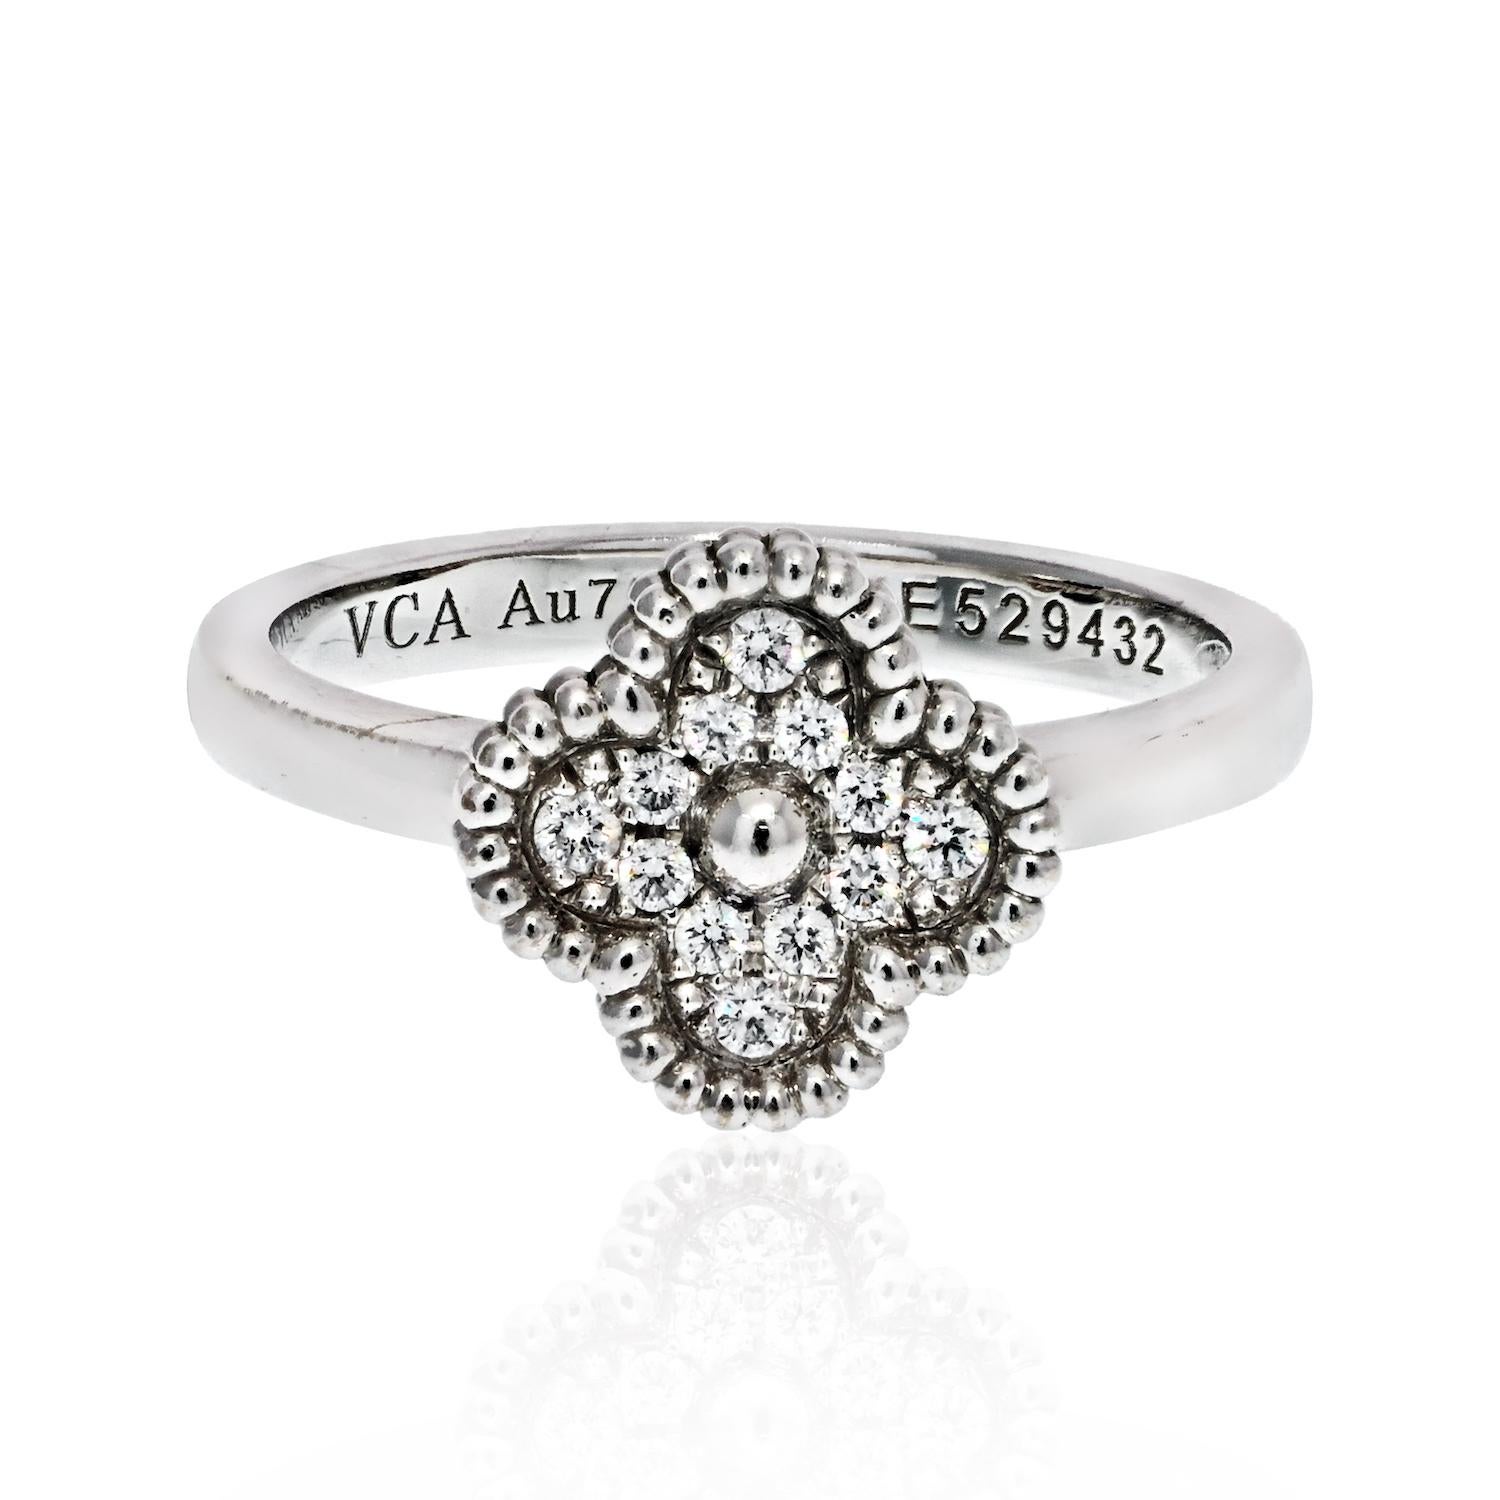 Van Cleef & Arpels 18K Weißgold Sweet Alhambra Diamant Mini Ring.
Größe 47. Amerikanisch 4.
Mit VCA-Zertifikat.
Perfekt wie ein kleiner Finger.